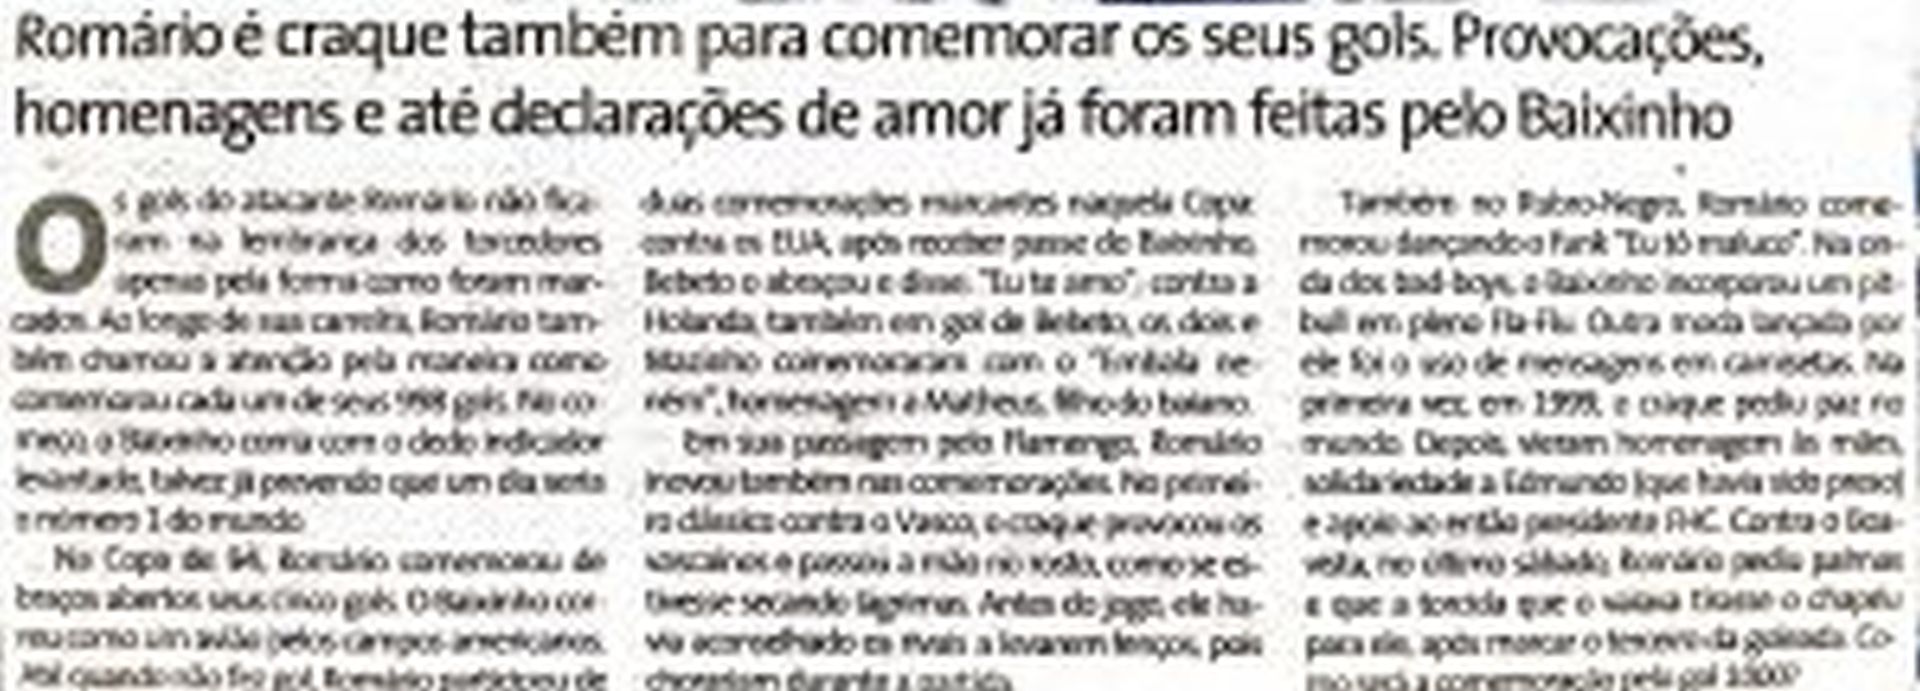 Read more about the article Romário é craque também para comemorar os seus gols